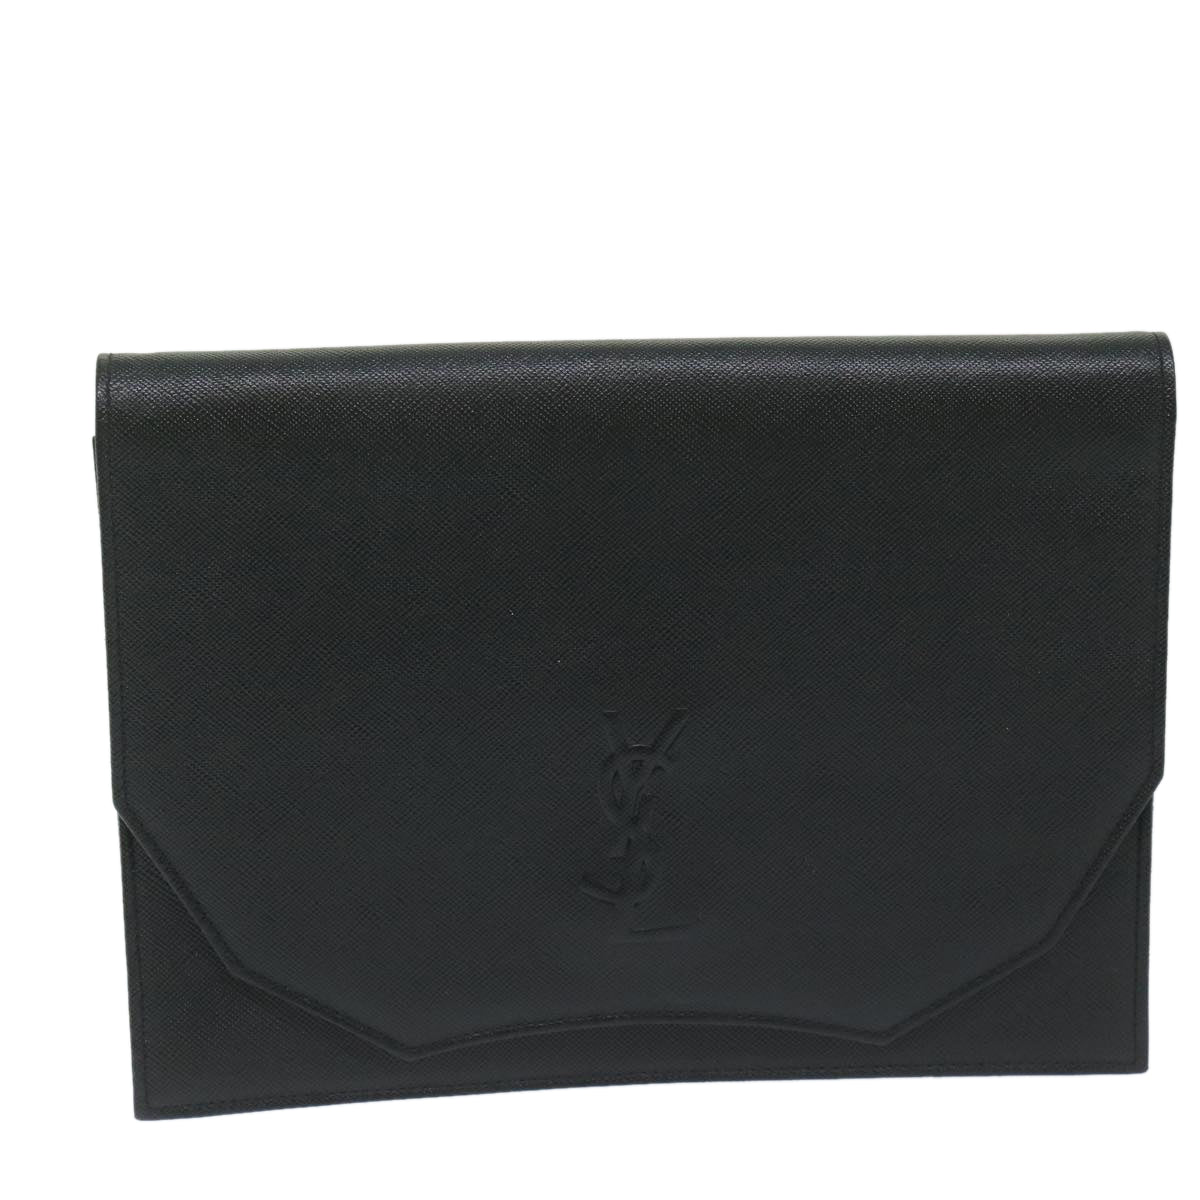 SAINT LAURENT Clutch Bag Leather Black Auth 63837 - 0